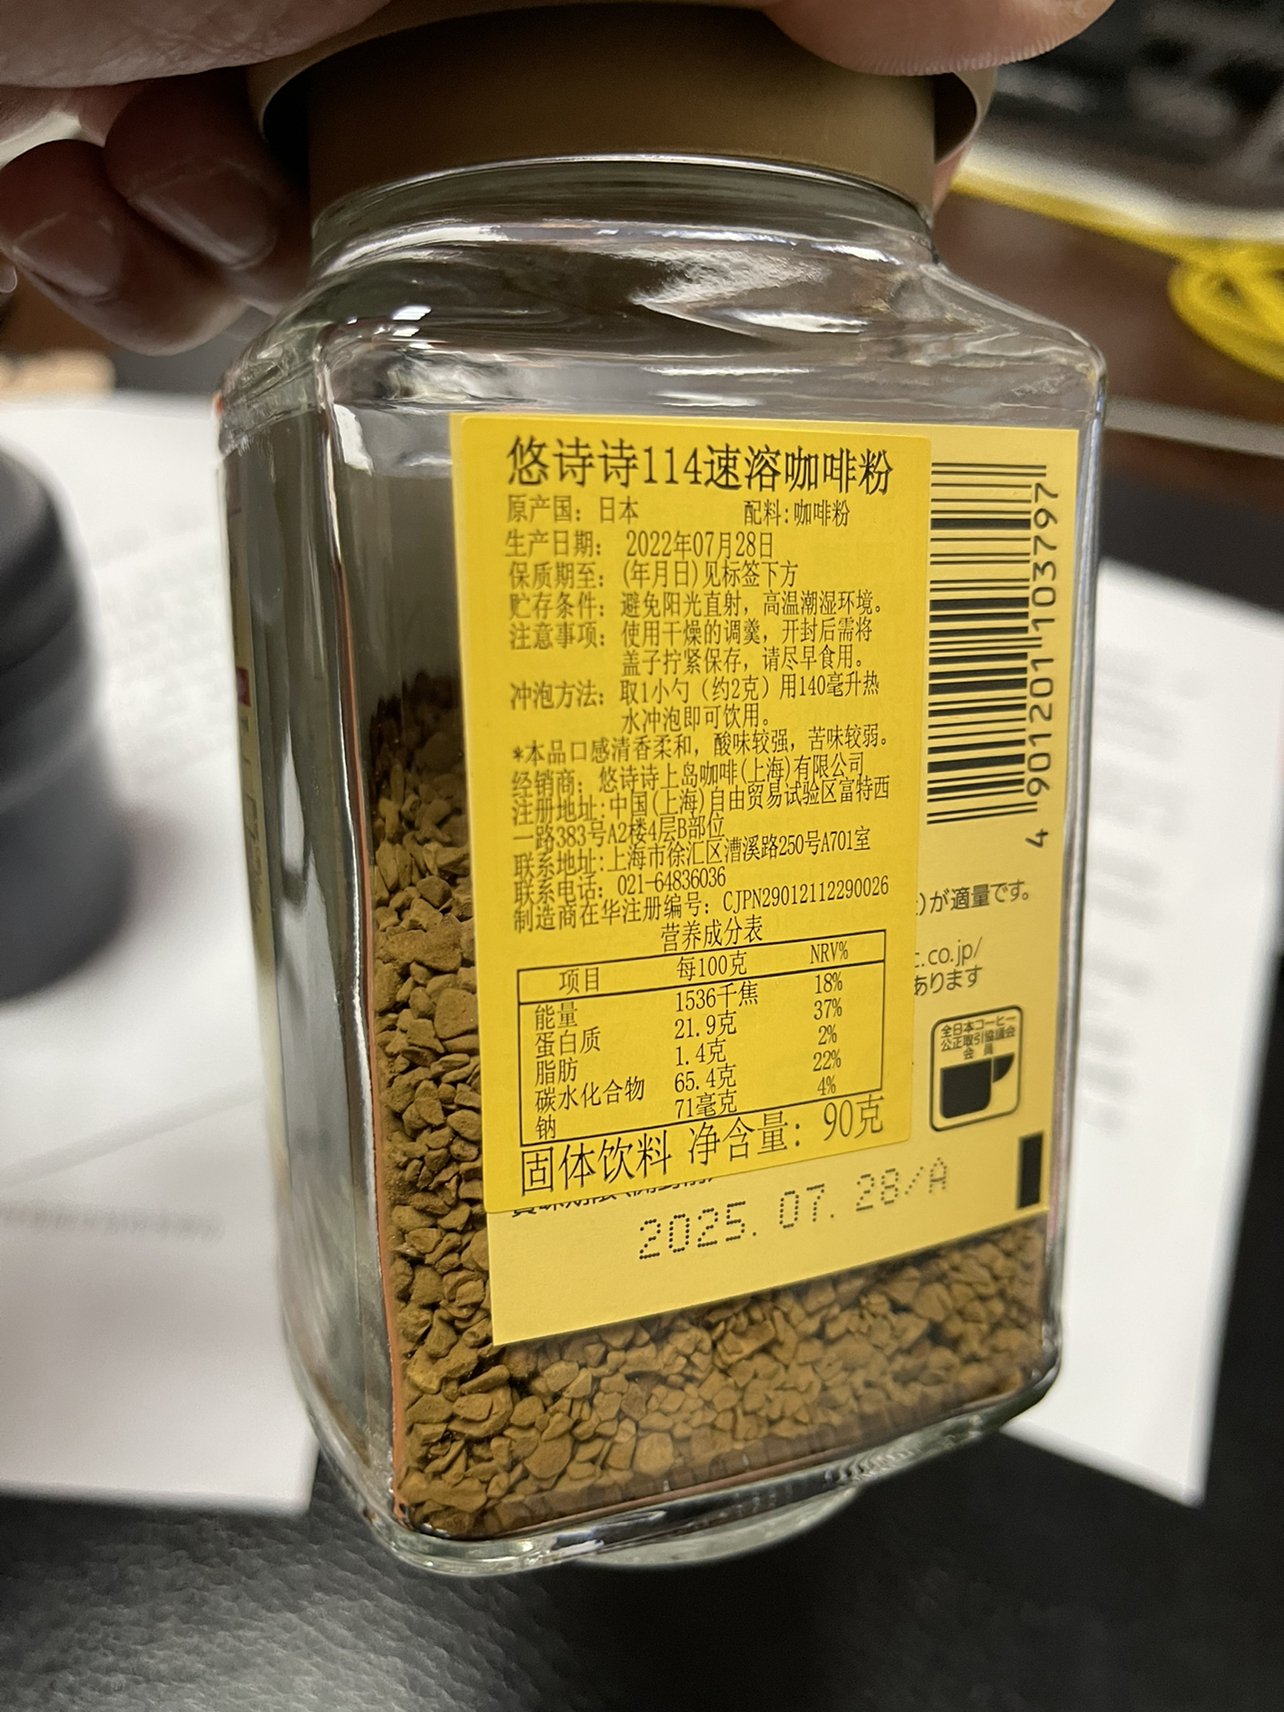 日本进口UCC悠诗诗117+114速溶咖啡黑咖啡瓶装90g晒单图